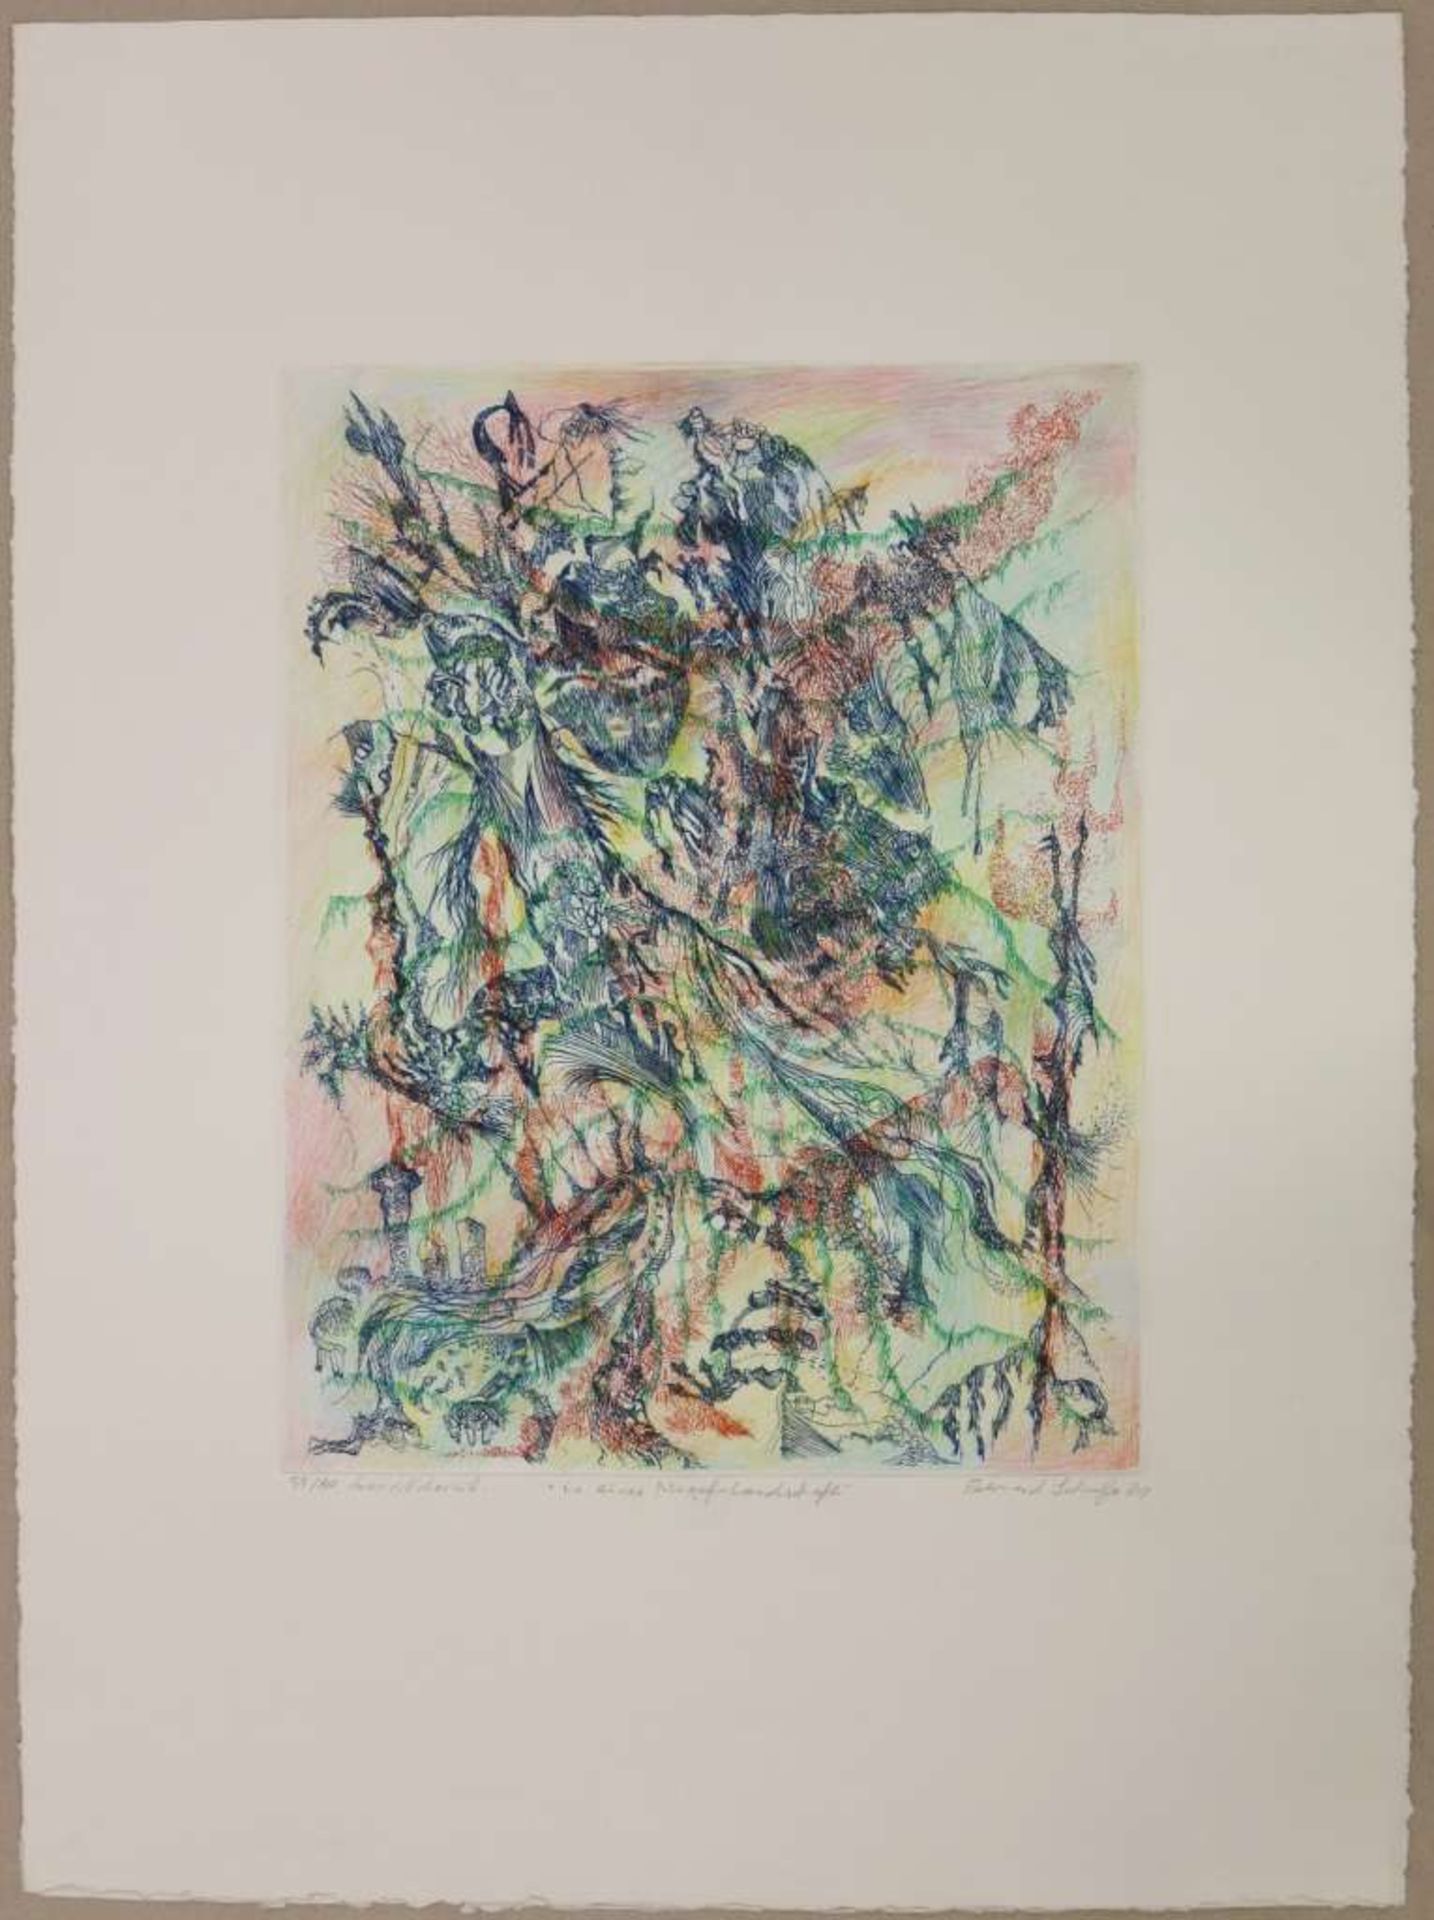 Bernard SCHULTZE (1915-2005), "In einer Migof-Landschaft", 1981, Radierung (hand coloured). Fra